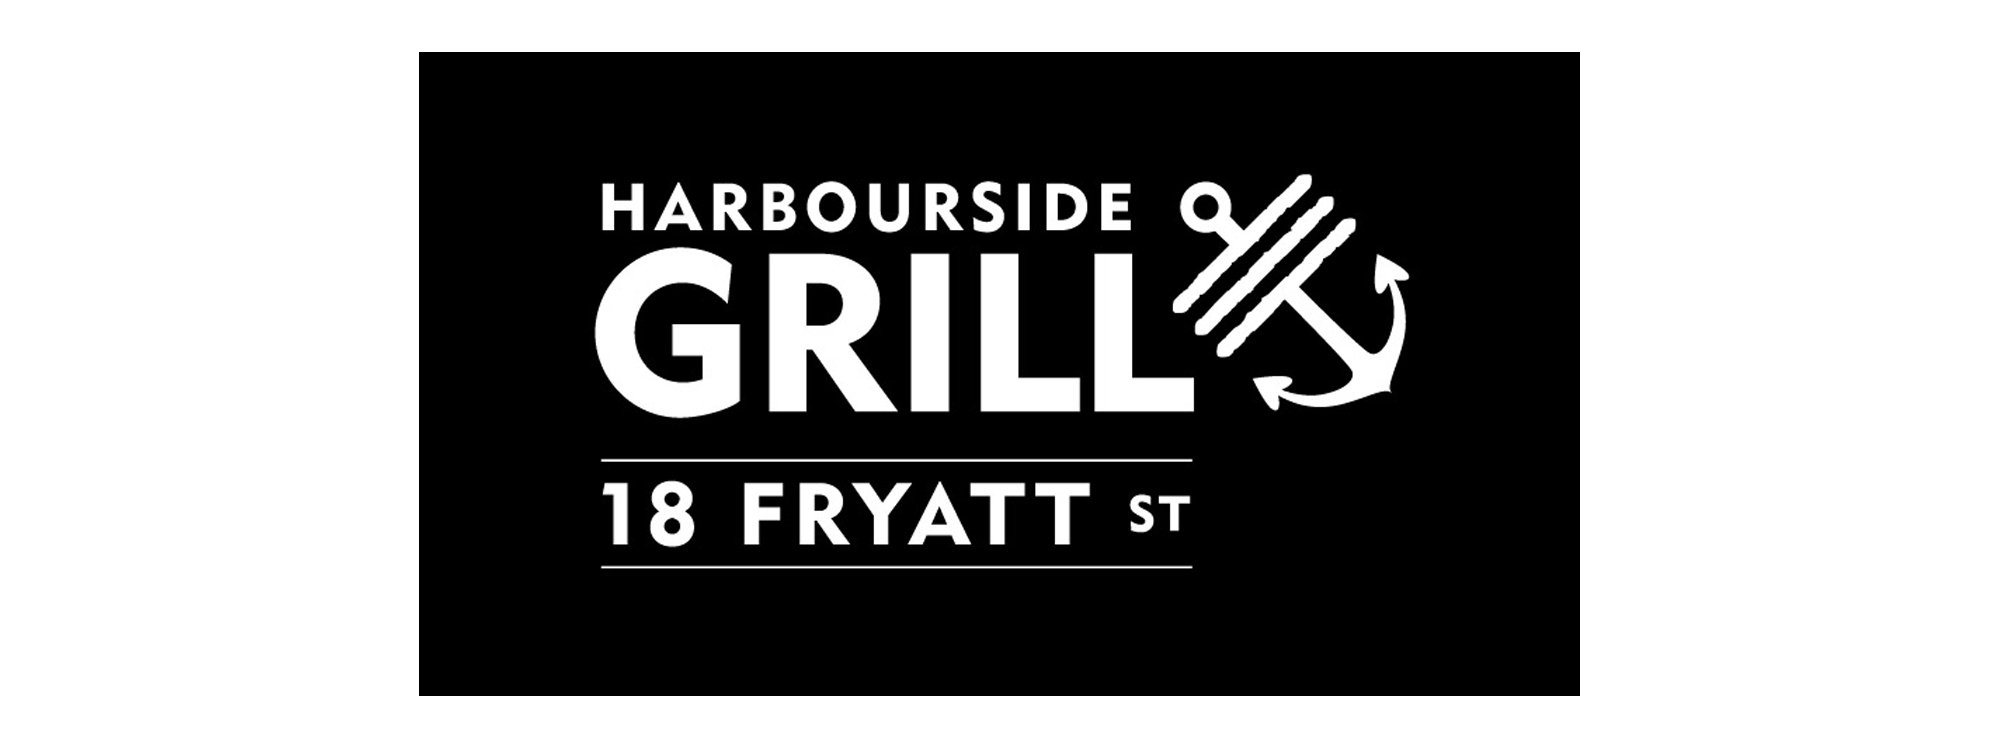 Harbourside Grill logo.jpeg